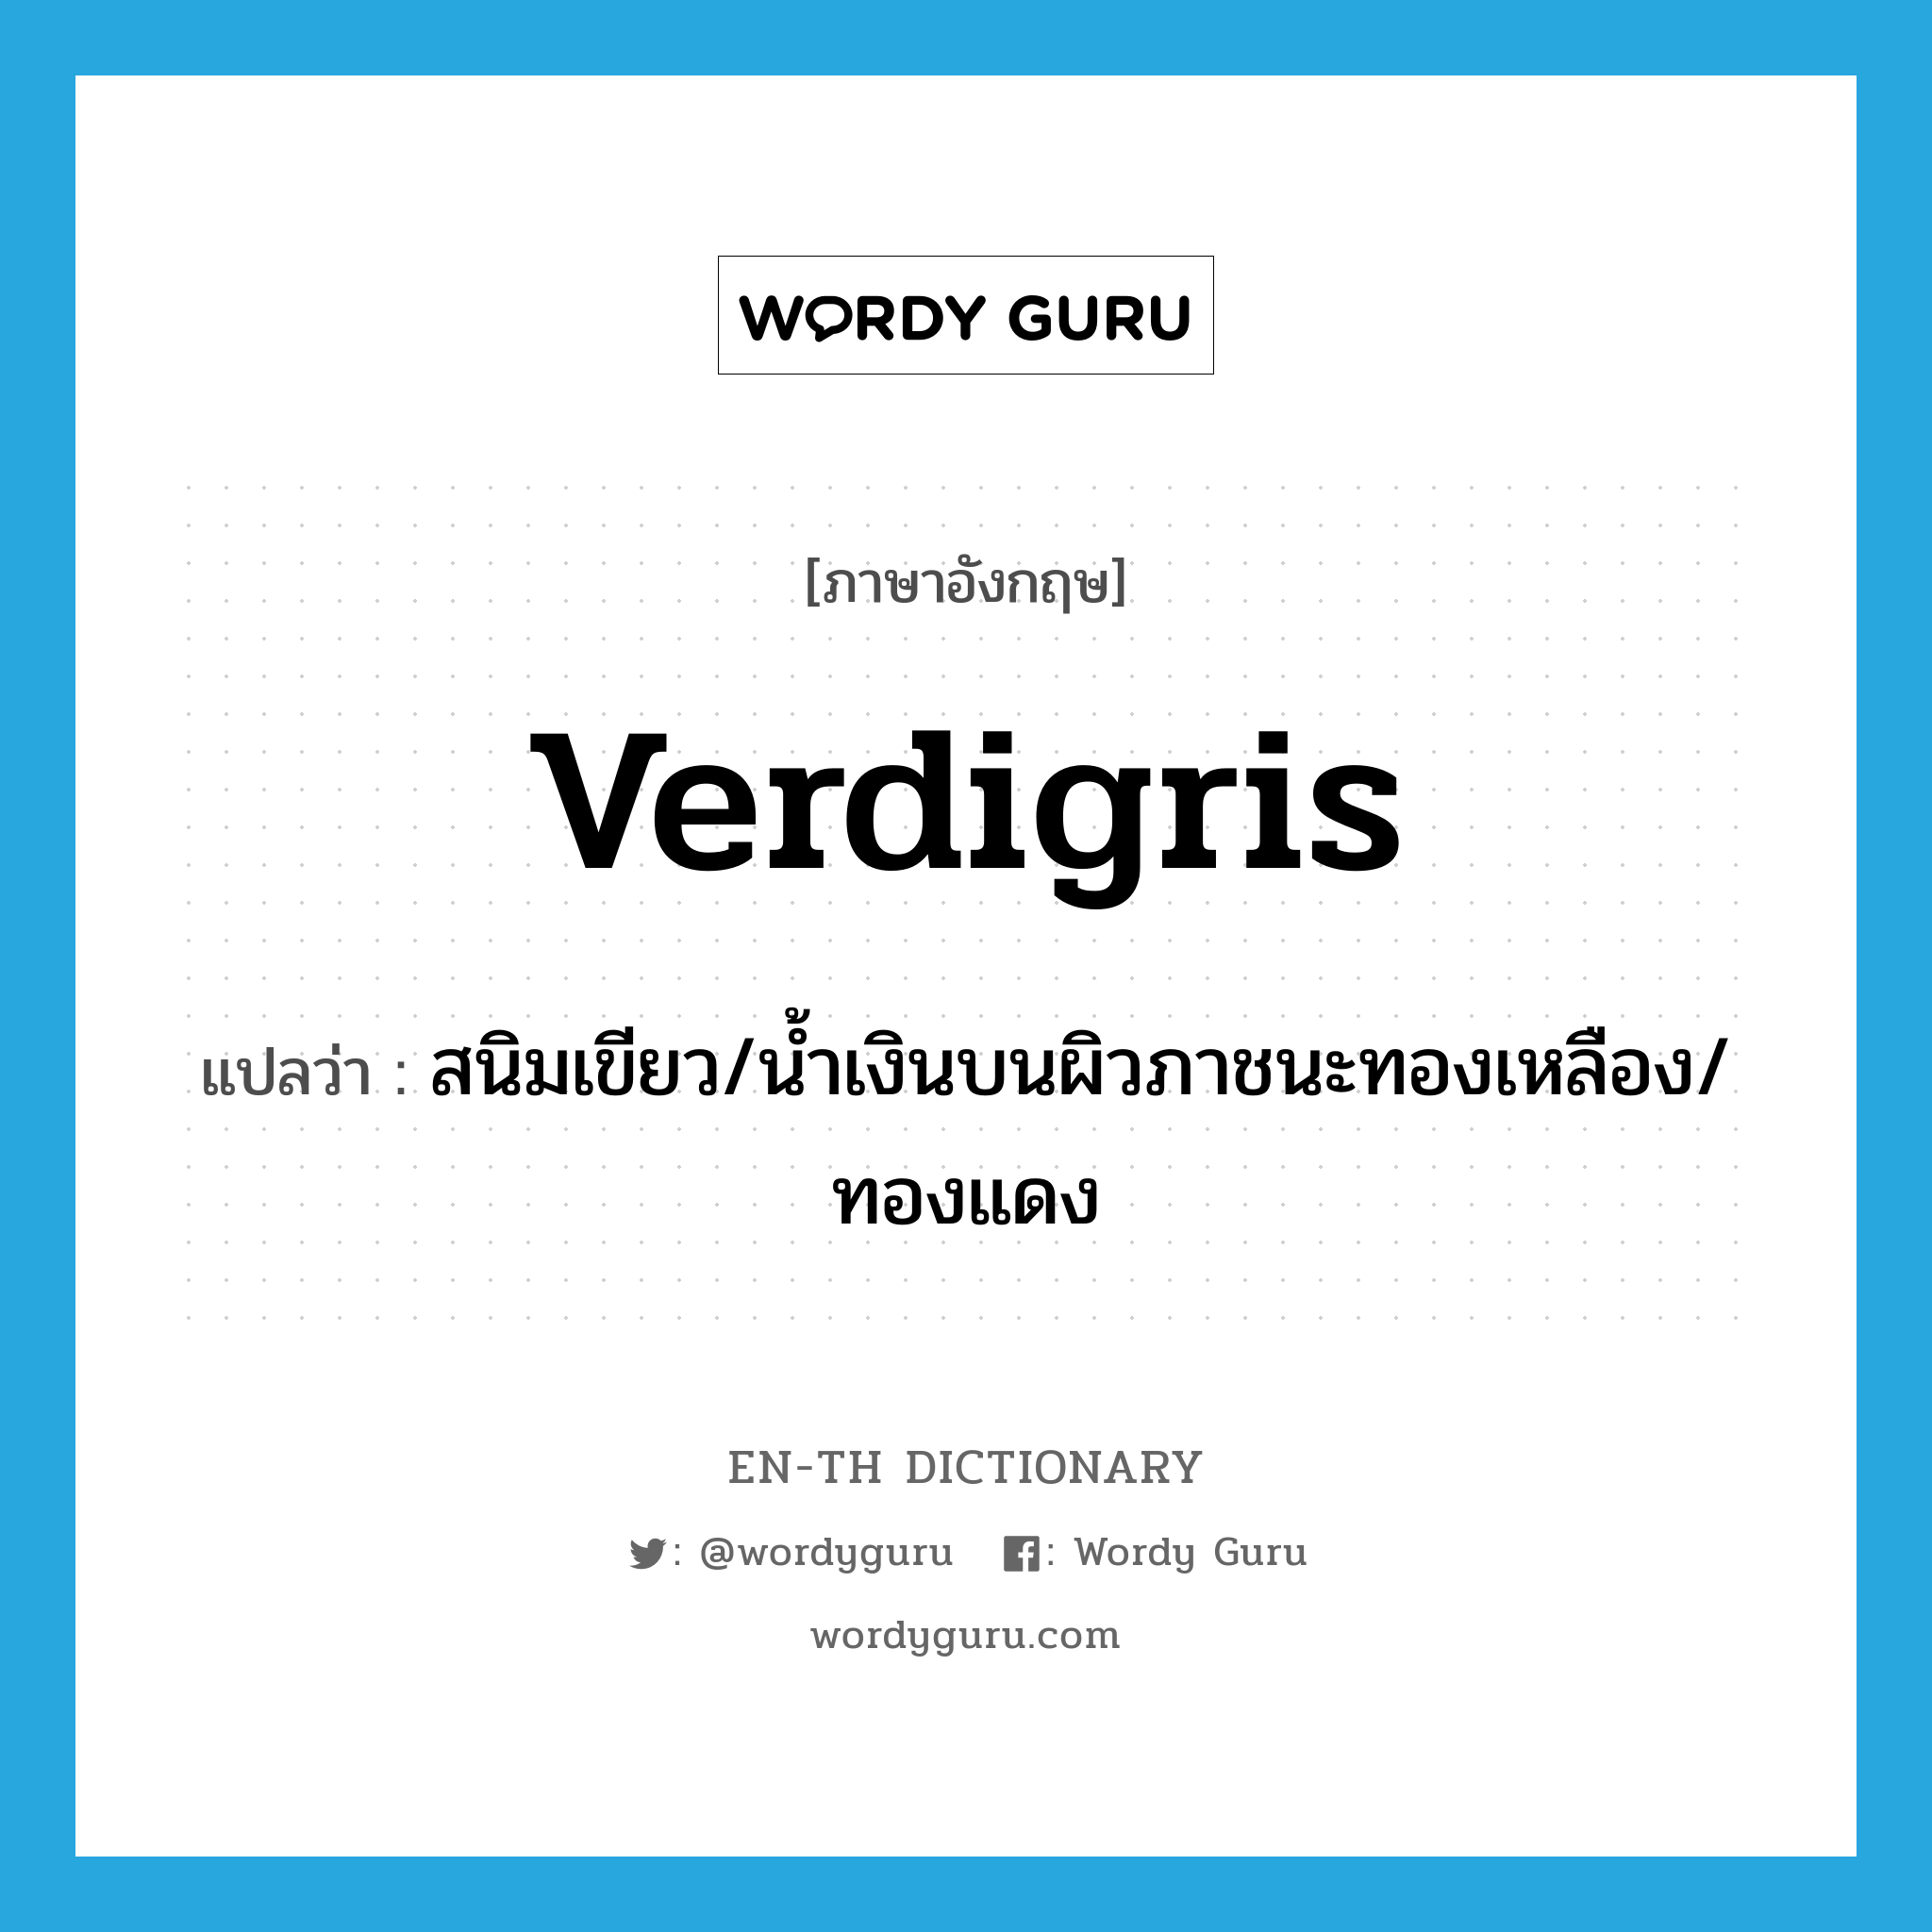 verdigris แปลว่า?, คำศัพท์ภาษาอังกฤษ verdigris แปลว่า สนิมเขียว/น้ำเงินบนผิวภาชนะทองเหลือง/ทองแดง ประเภท N หมวด N